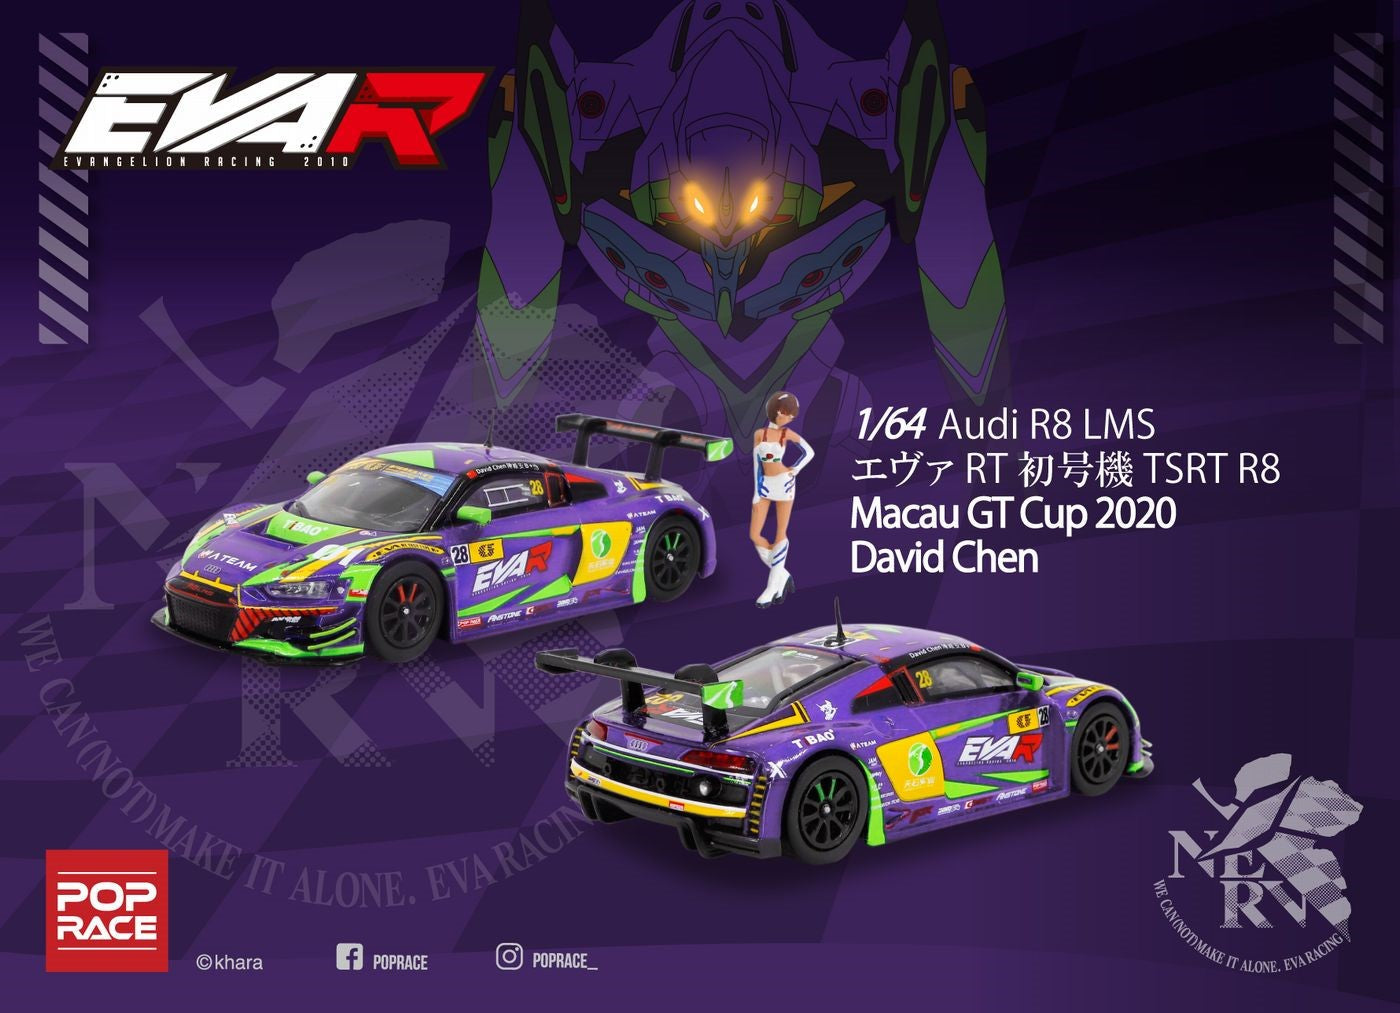 Pop Race Audi R8 LMS - EVA RT TEST TYPE-01 TSRT R8 Macau GT Cup 2020 David Chen with Rei Ayanami Race figure